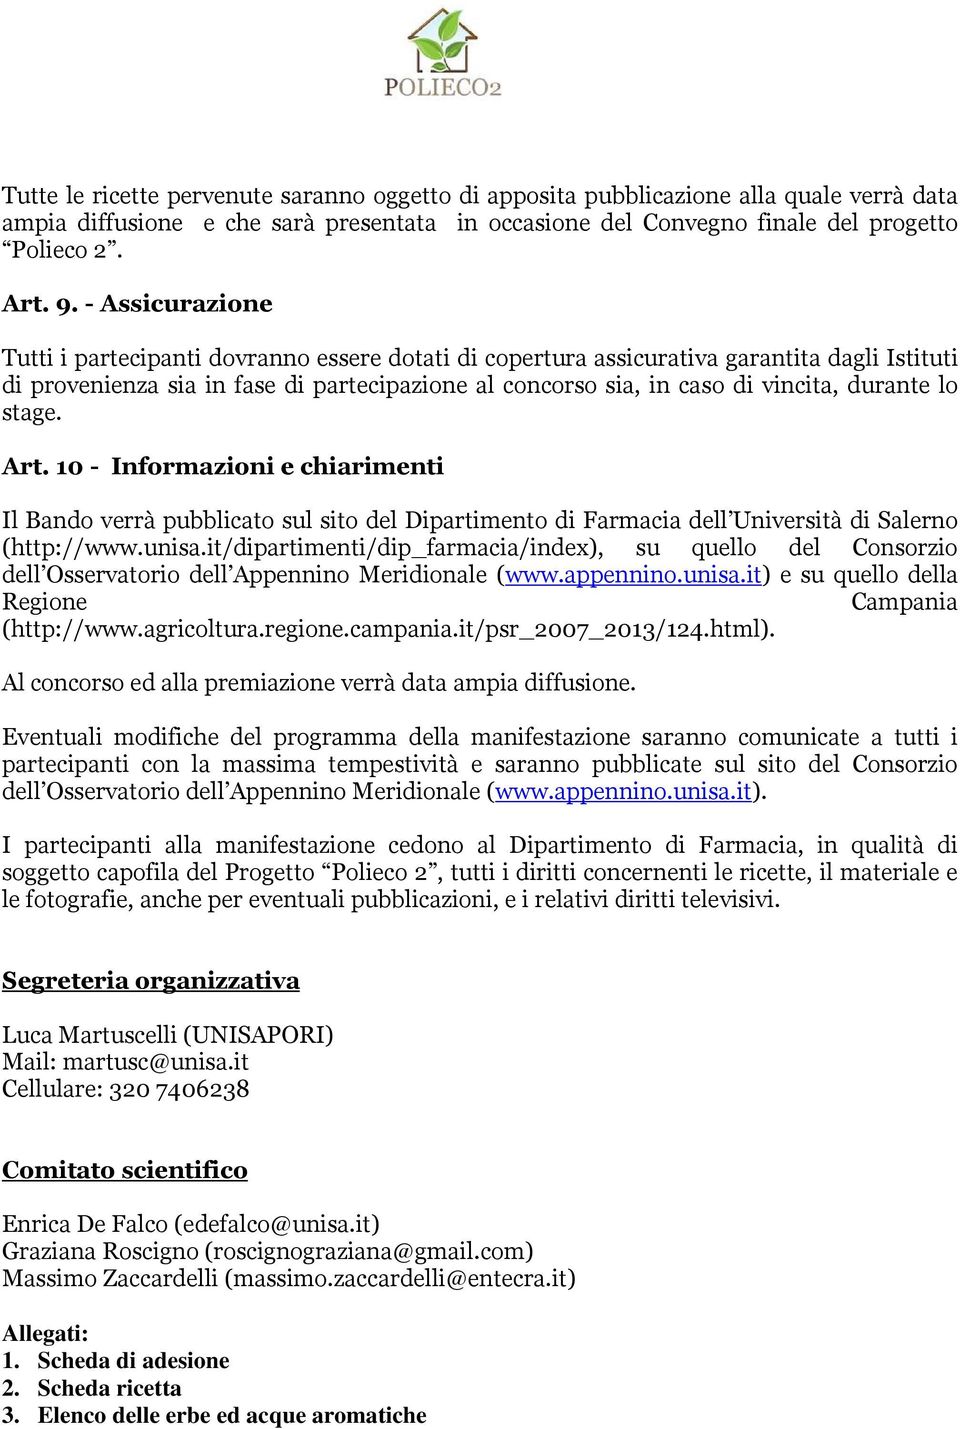 durante lo stage. Art. 10 - Informazioni e chiarimenti Il Bando verrà pubblicato sul sito del Dipartimento di Farmacia dell Università di Salerno (http://www.unisa.